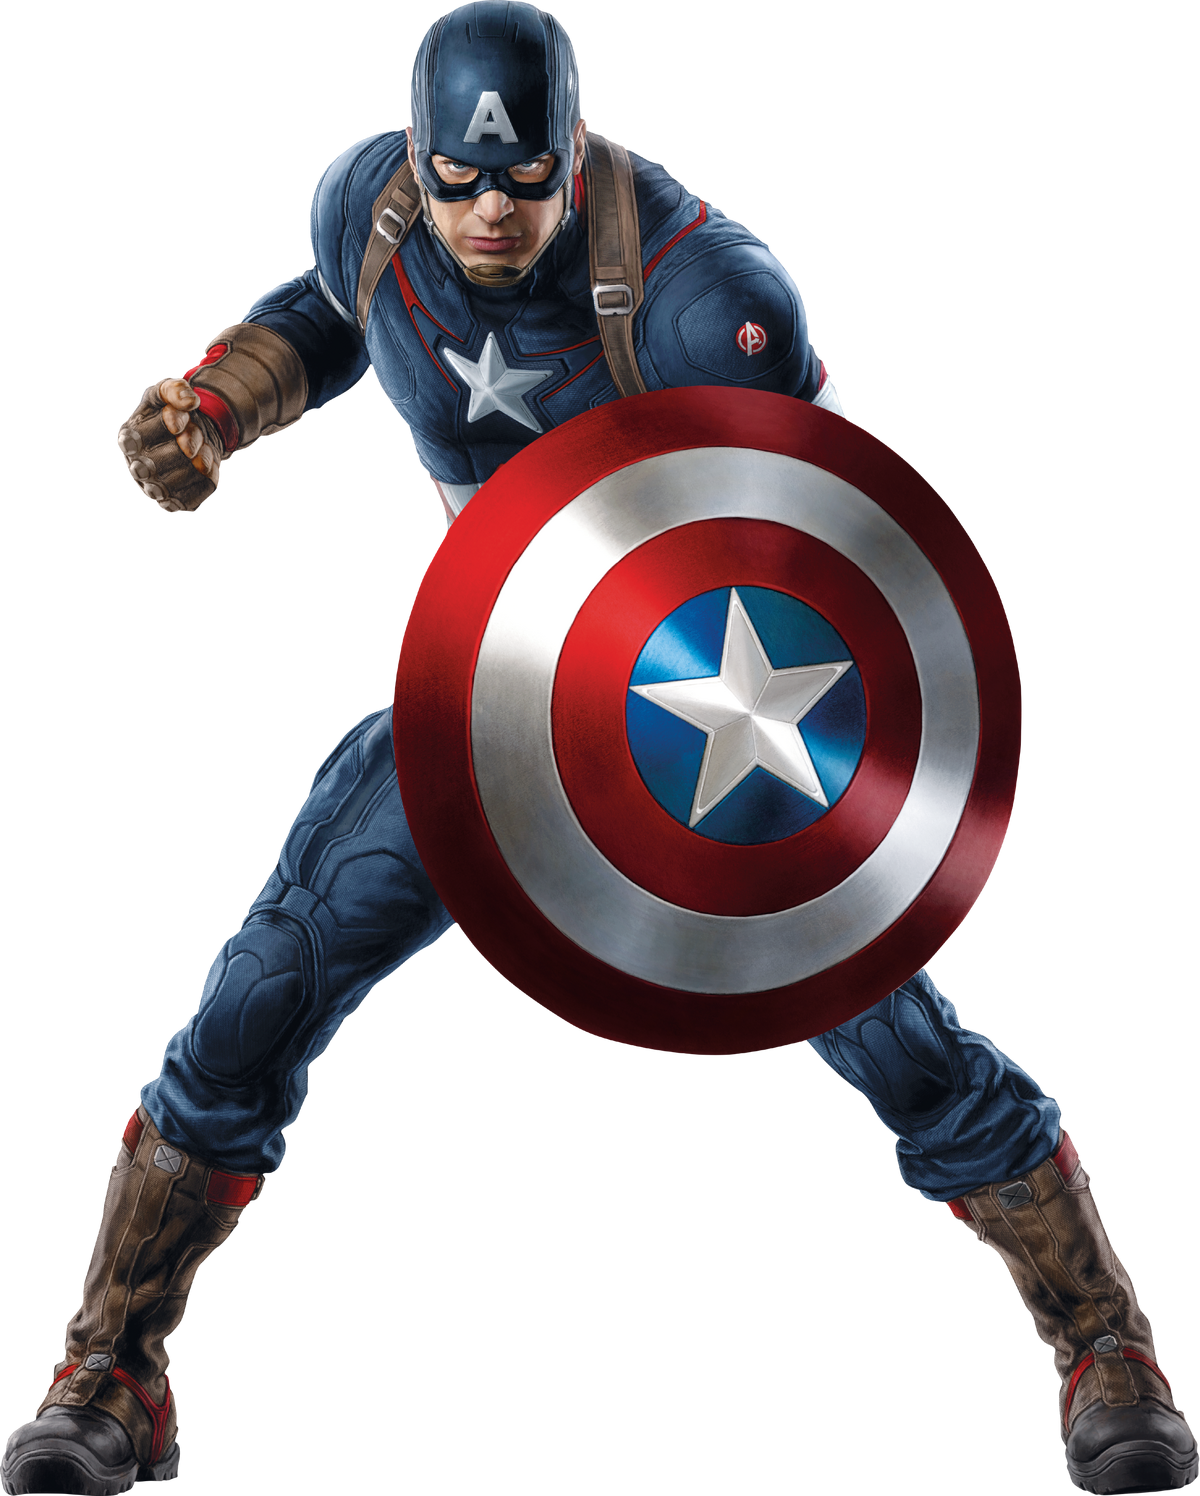 Vengadores Guerra del Infinito superhéroes de Marvel Iron Man Juguetes  Capitán América Hulk Thanos Spiderman figura de acción de juguete Juego de